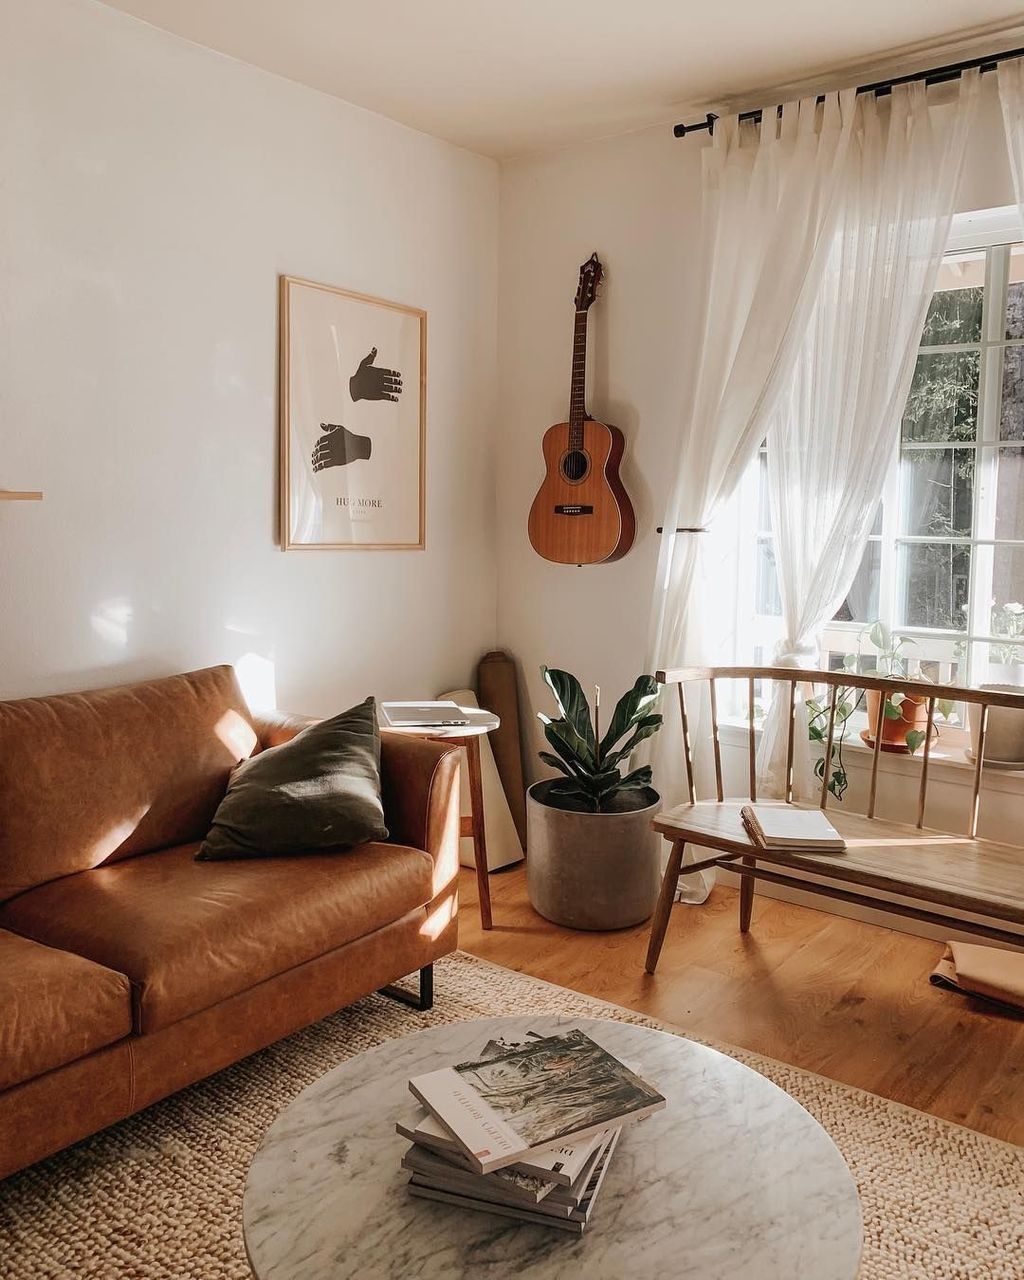 8 room decor Boho minimalist ideas